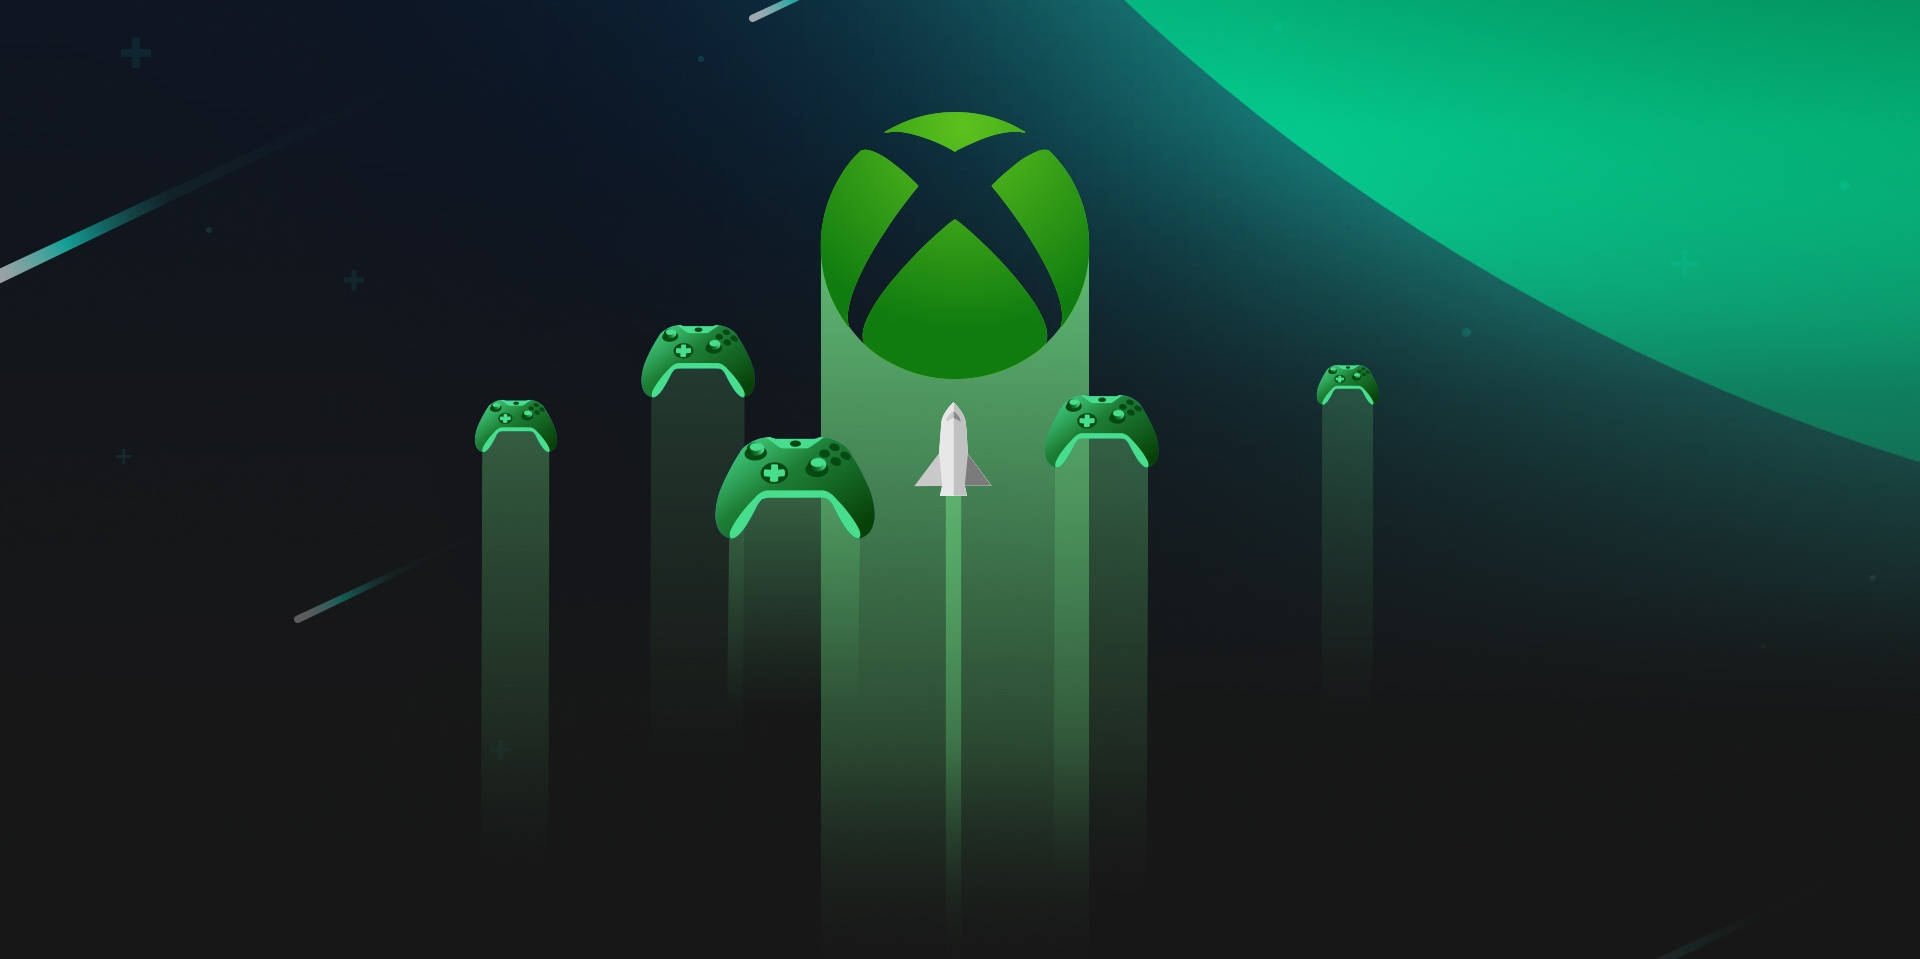 Tận hưởng trải nghiệm với hình nền chất lượng cao của Xbox Series X, đưa bạn đến gần như không gian thực tế của trò chơi. Hình nền độc đáo và tuyệt đẹp của Xbox Series X background sẽ khiến bạn thực sự háo hức để bắt đầu trải nghiệm sản phẩm này.